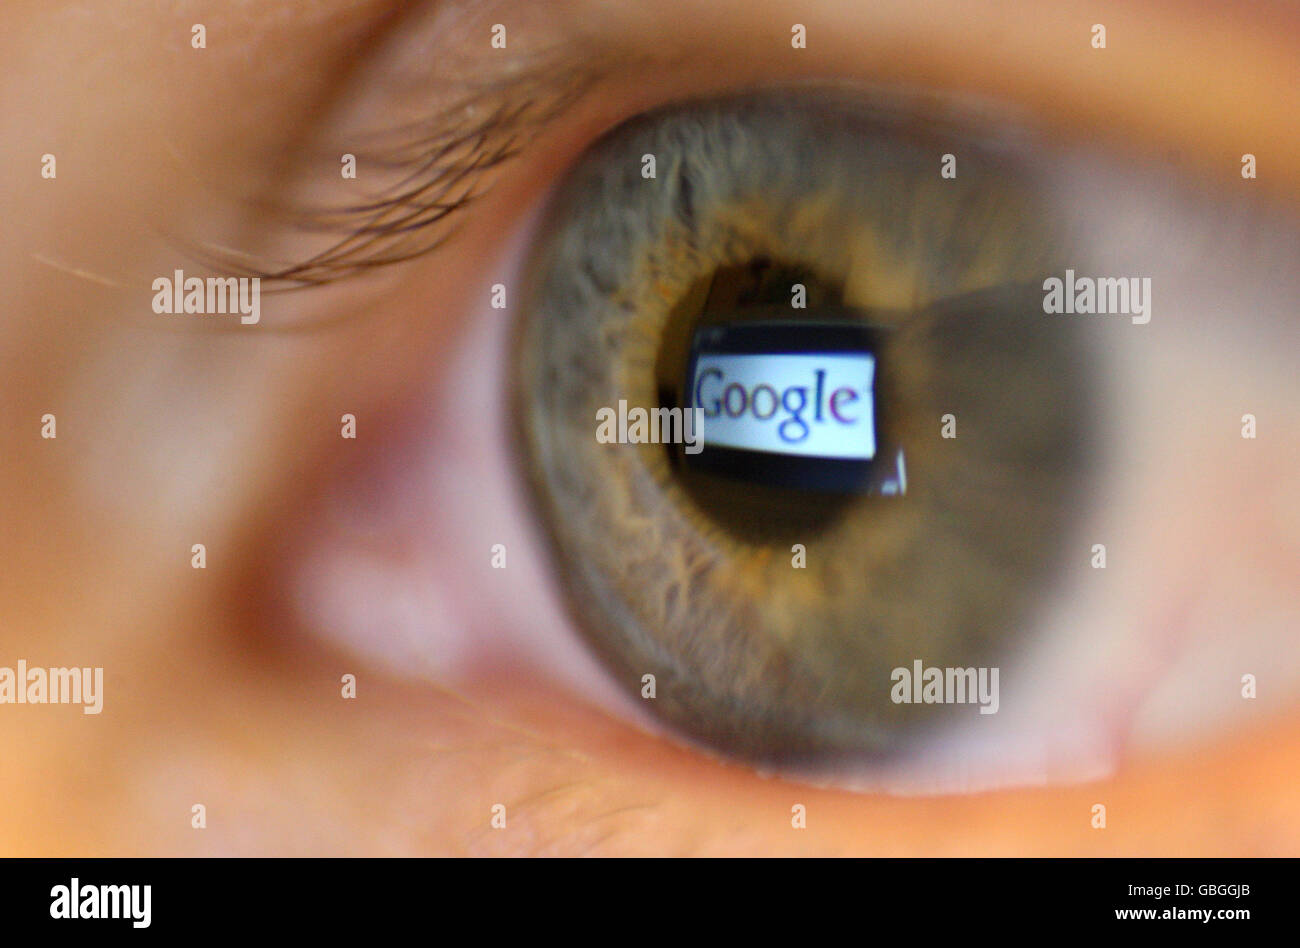 Una foto genérica del logotipo de Google visto reflejado en el ojo de una persona. Foto de stock